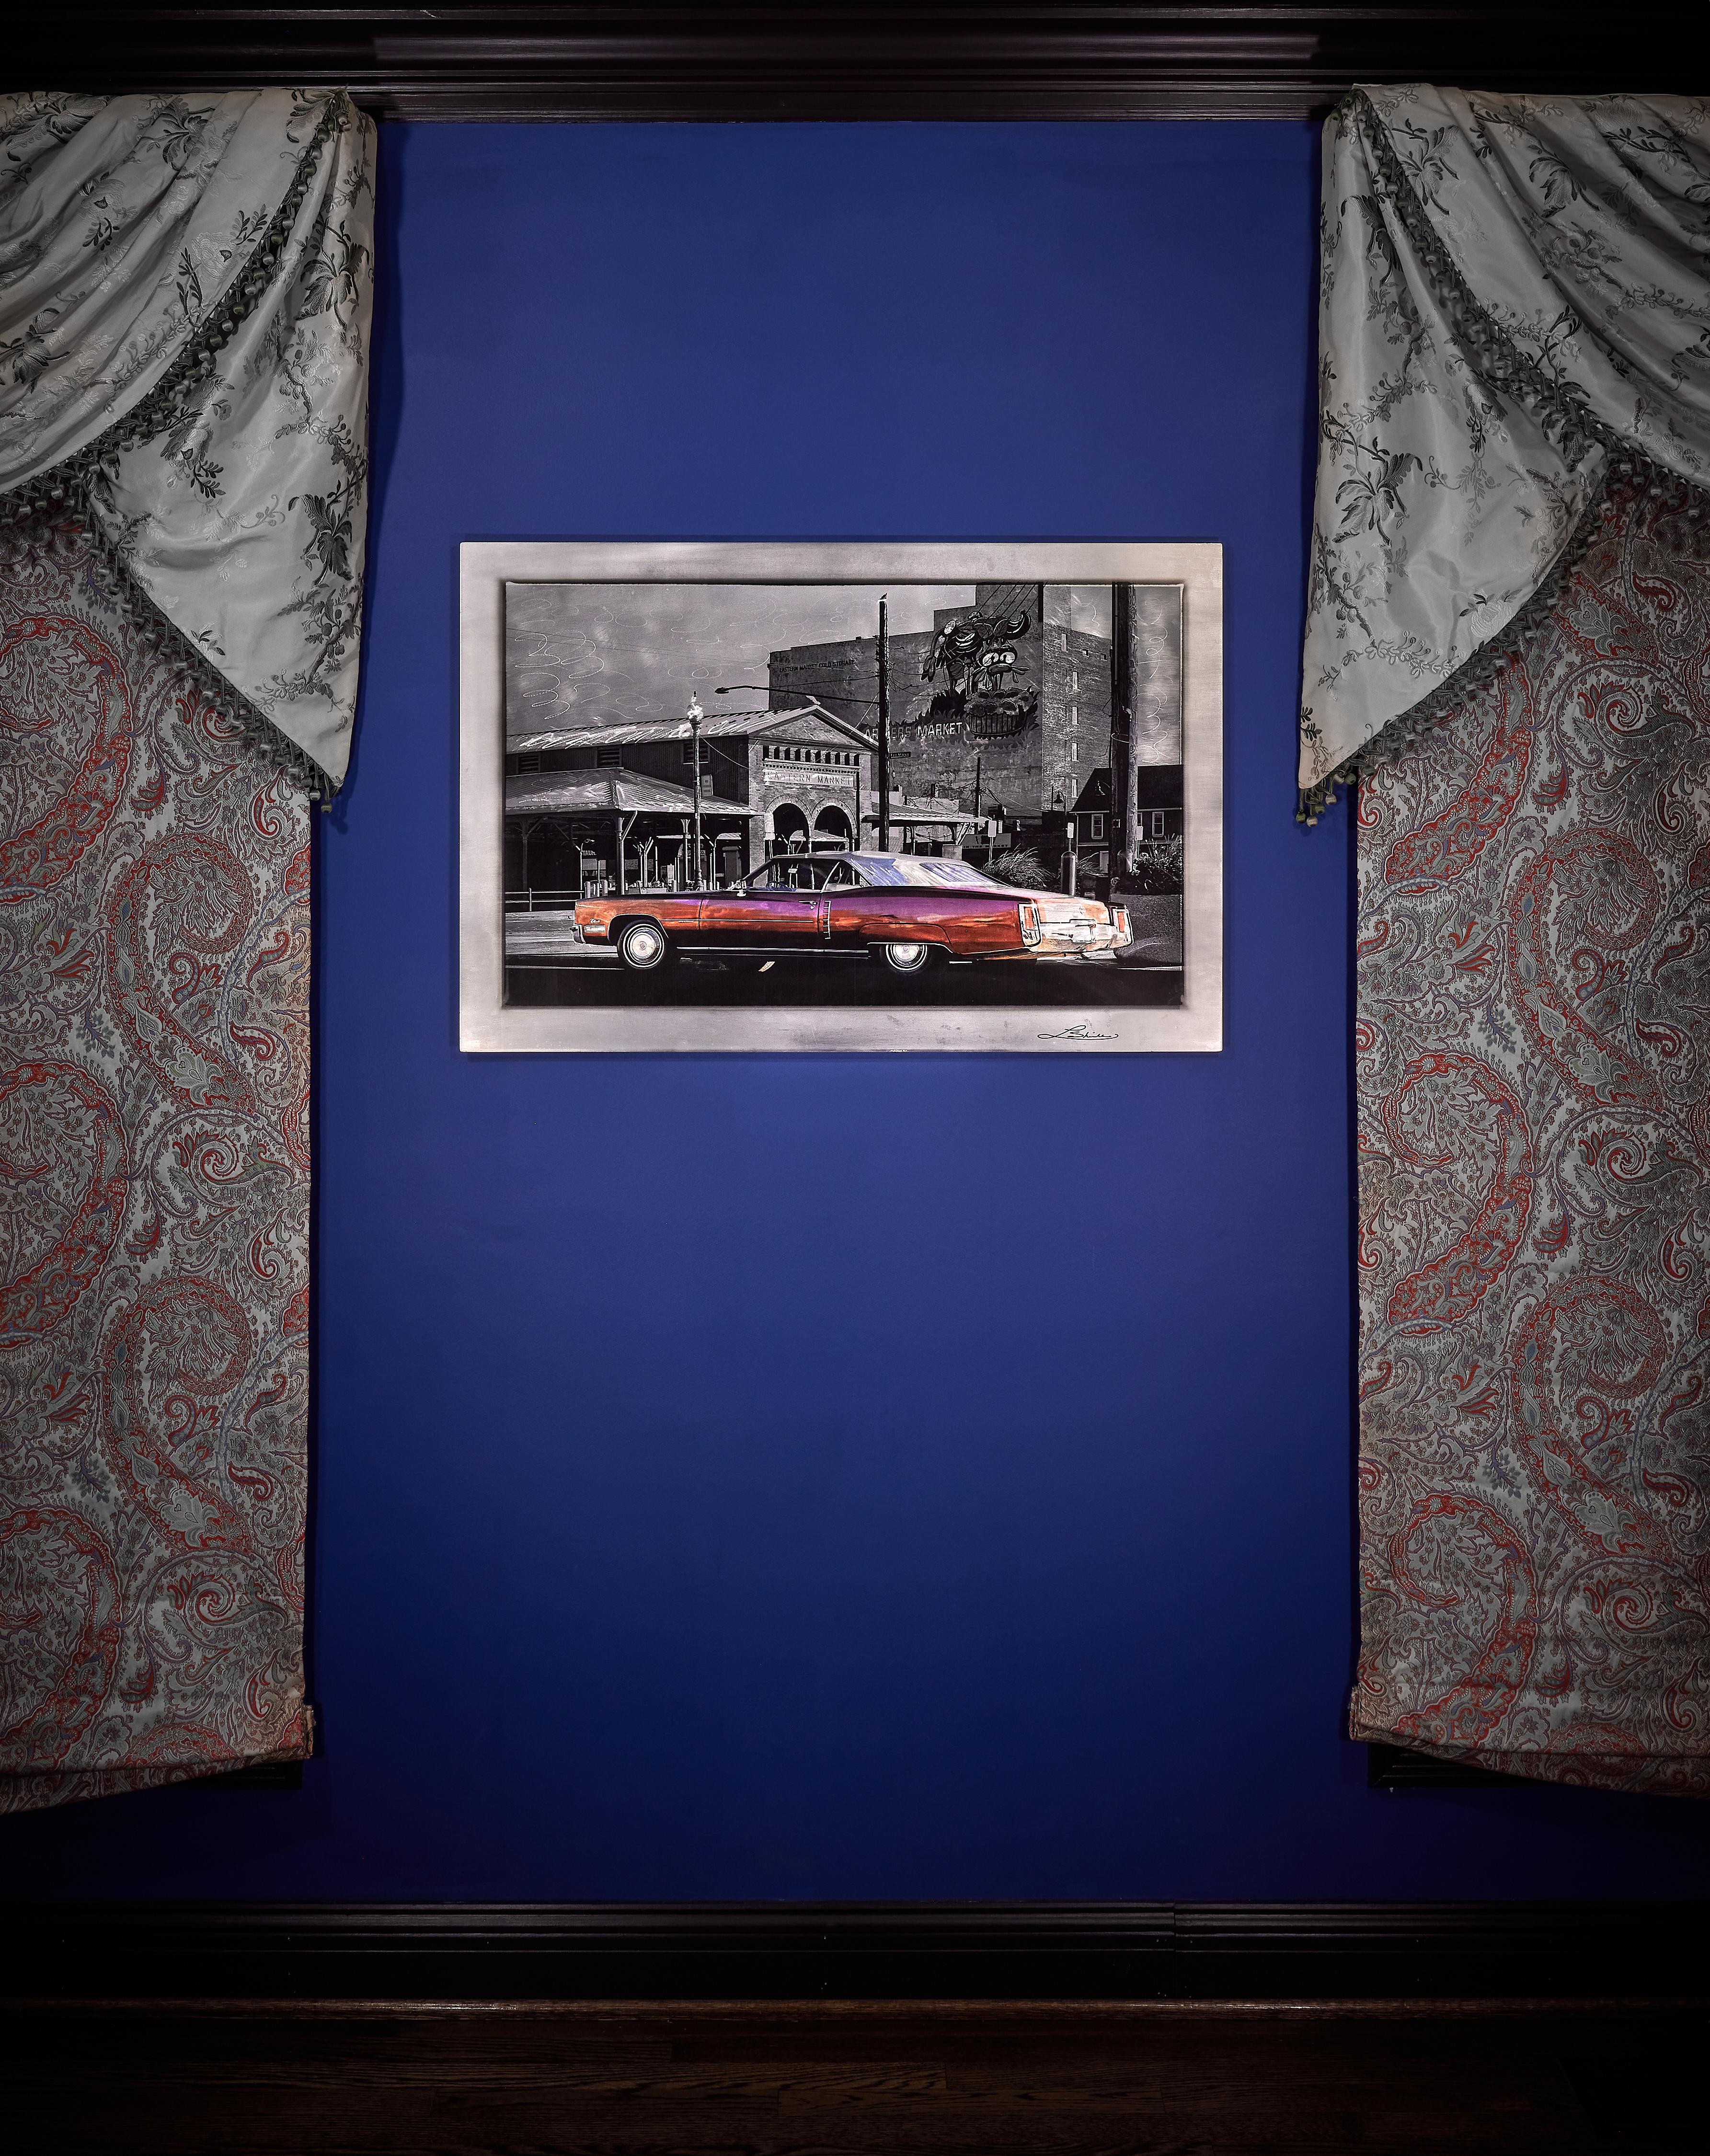 Ein klassischer Cadillac Eldorado erschien wie auf Kommando während eines frühmorgendlichen Fotoausflugs auf dem Detroiter Eastern Market. Der im Herzen der Stadt gelegene Markt bietet seit 1891 Verpflegung an. An diesem knackigen Herbsttag diente